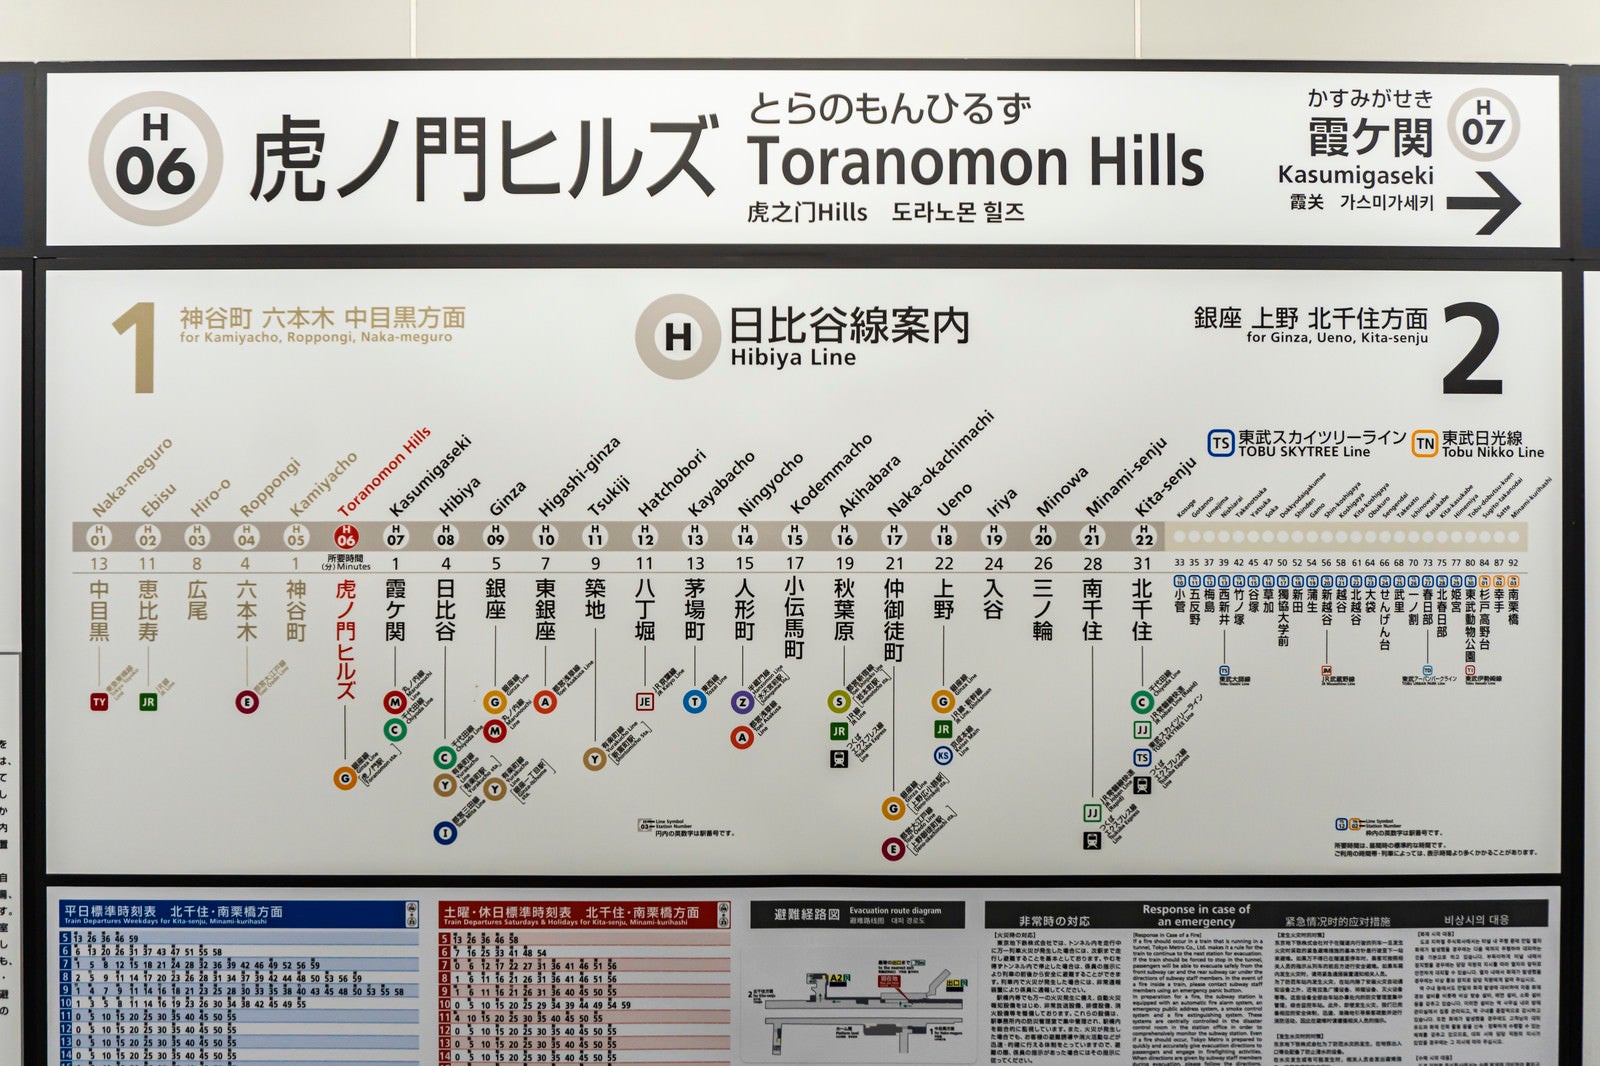 「虎ノ門ヒルズ駅ができた日比谷線案内図」の写真